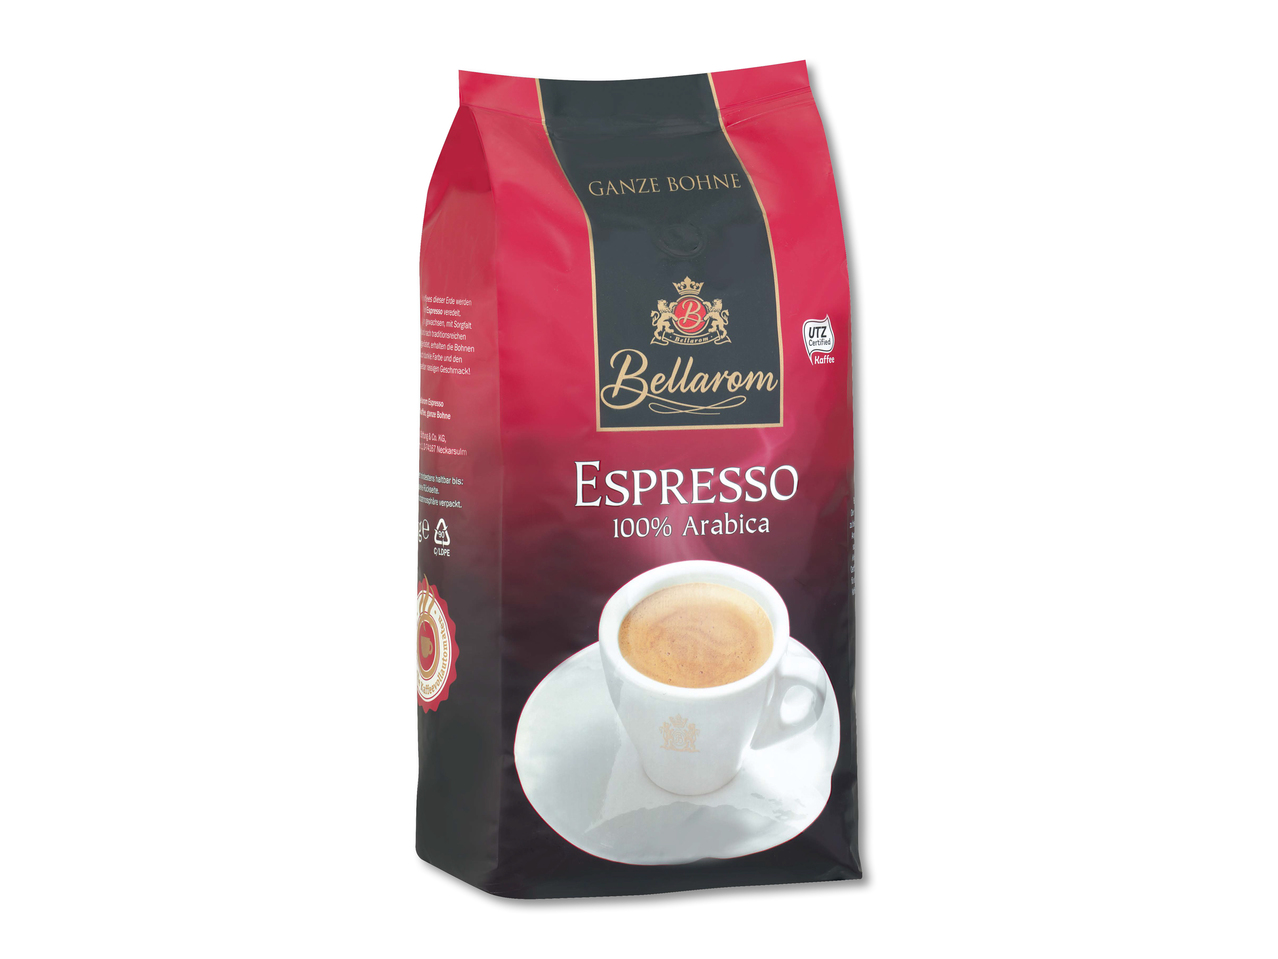 Bellarom Caffé Espresso